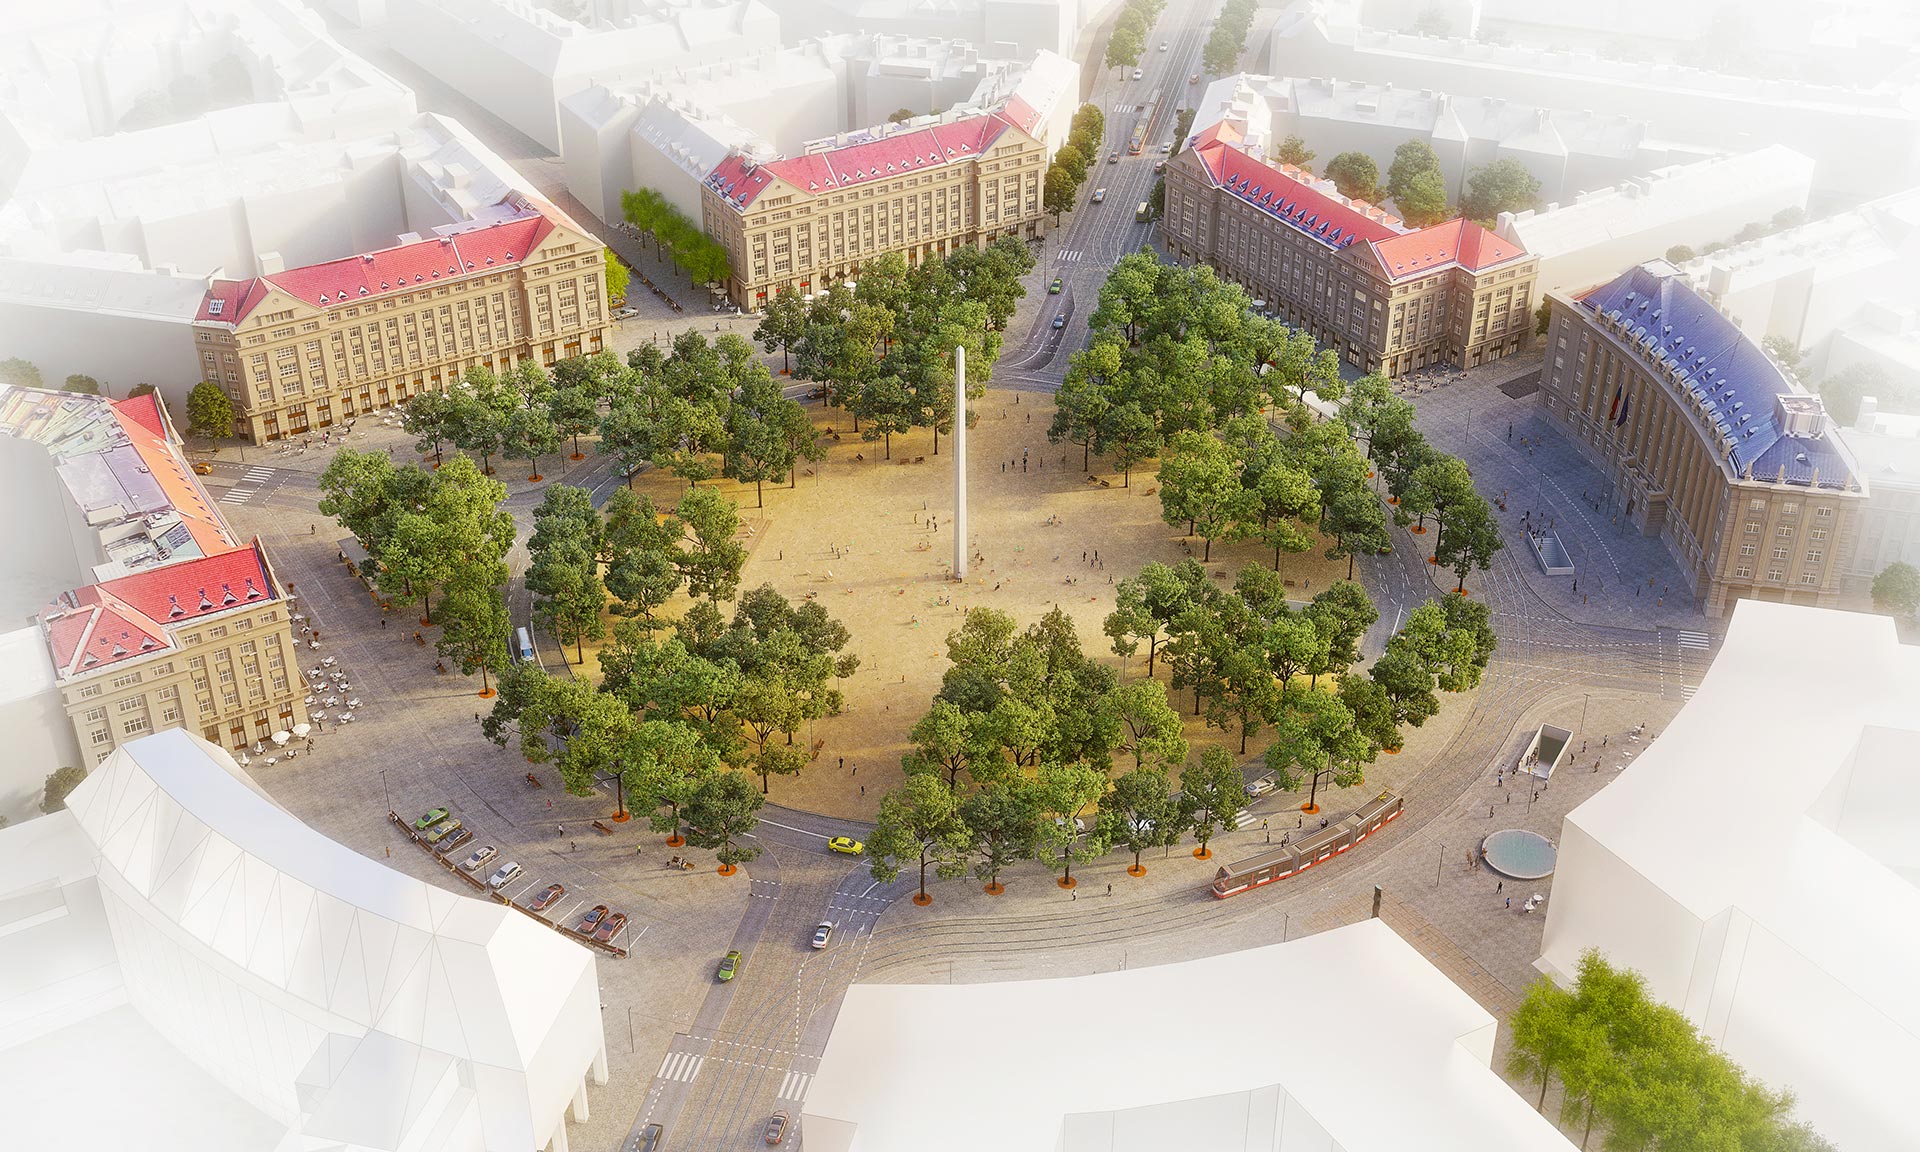 Vítězné náměstí v Praze se výrazně promění a zklidní podle návrhu Pavel Hnilička Architekti